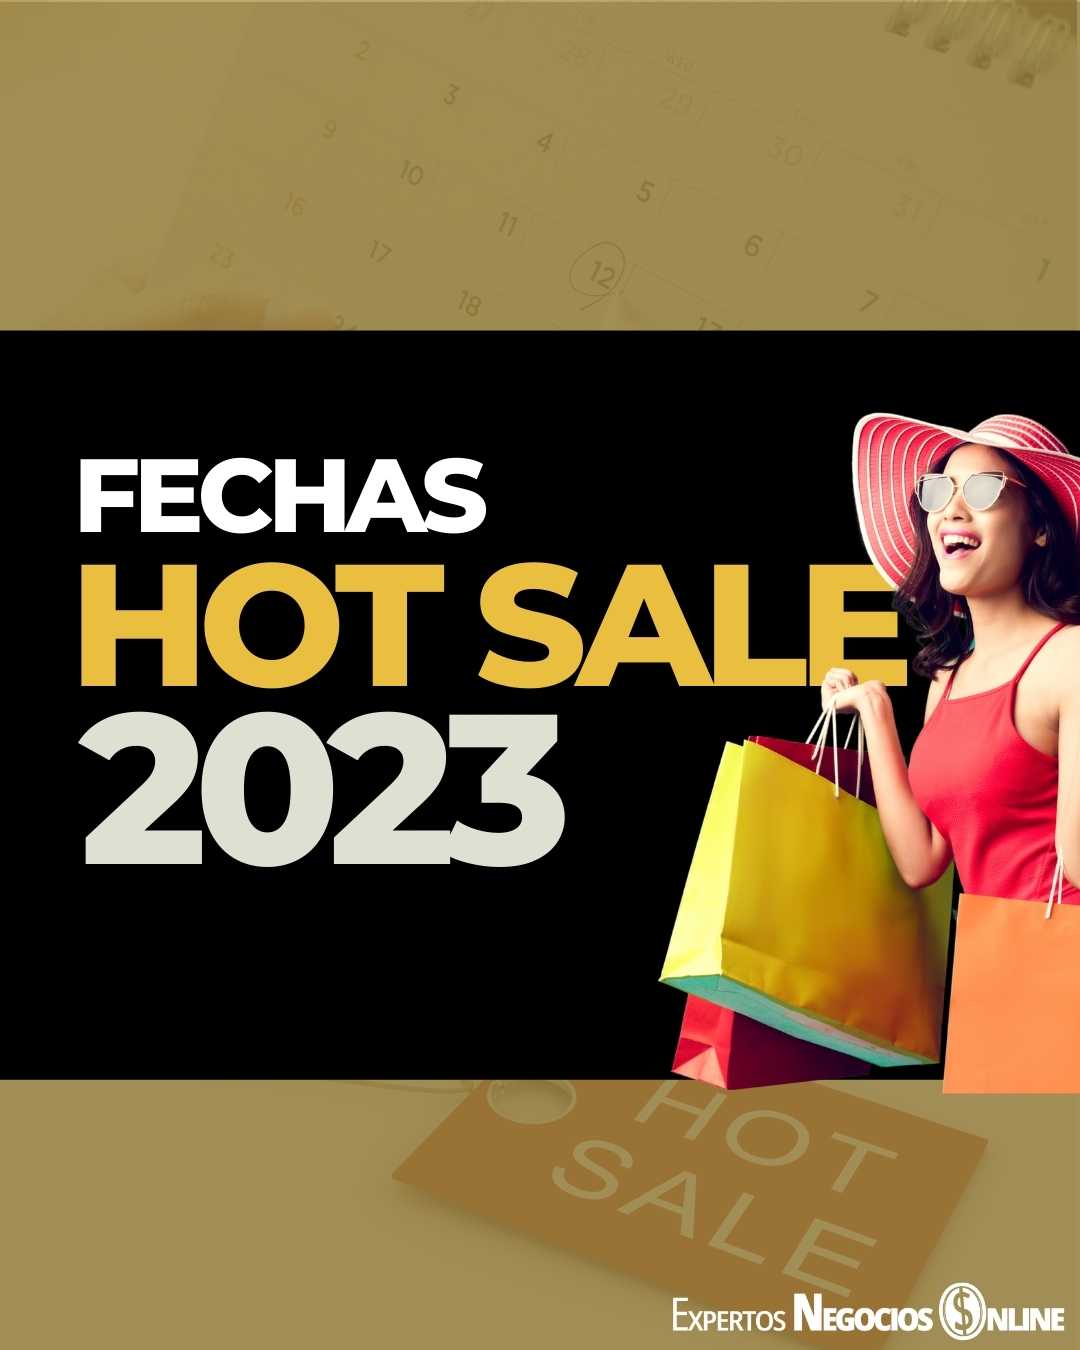 Fechas Hot Sale 2023 en México, Argentina